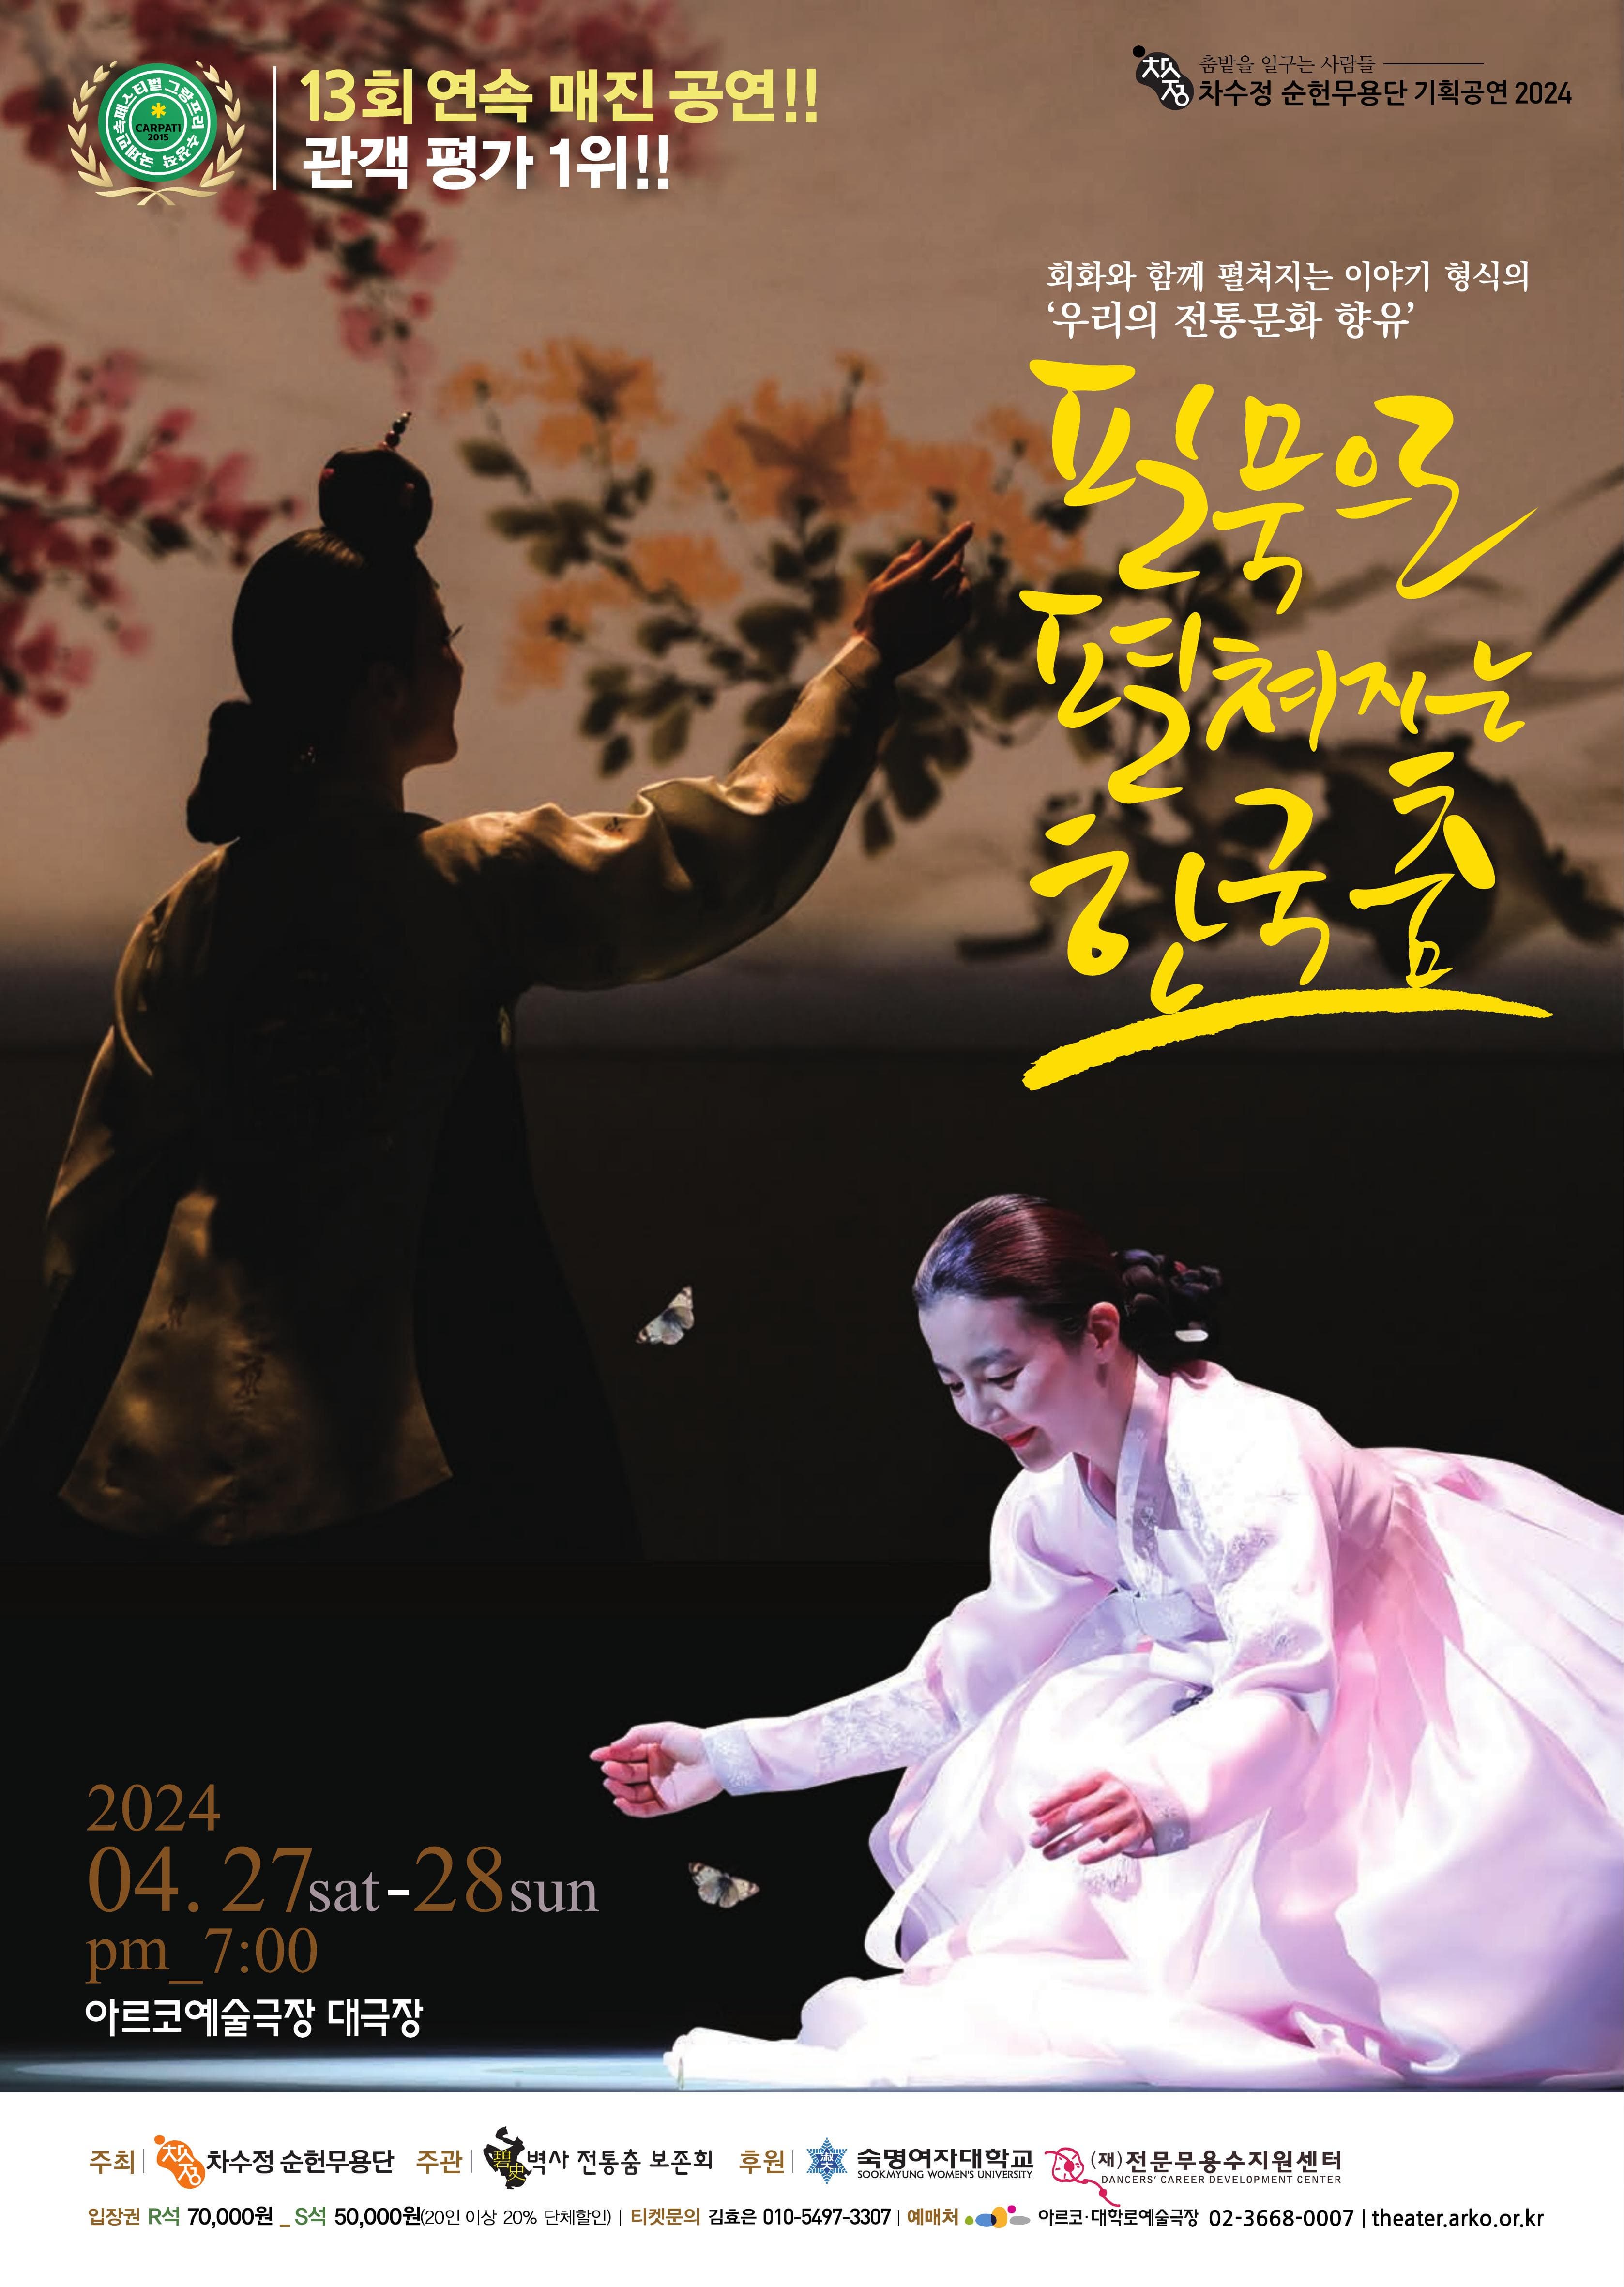 필묵으로 펼쳐지는 한국춤 | 아르코예술극장 대극장 | 2024.04.27 ~ 2024.04.28 토, 일요일 19:00